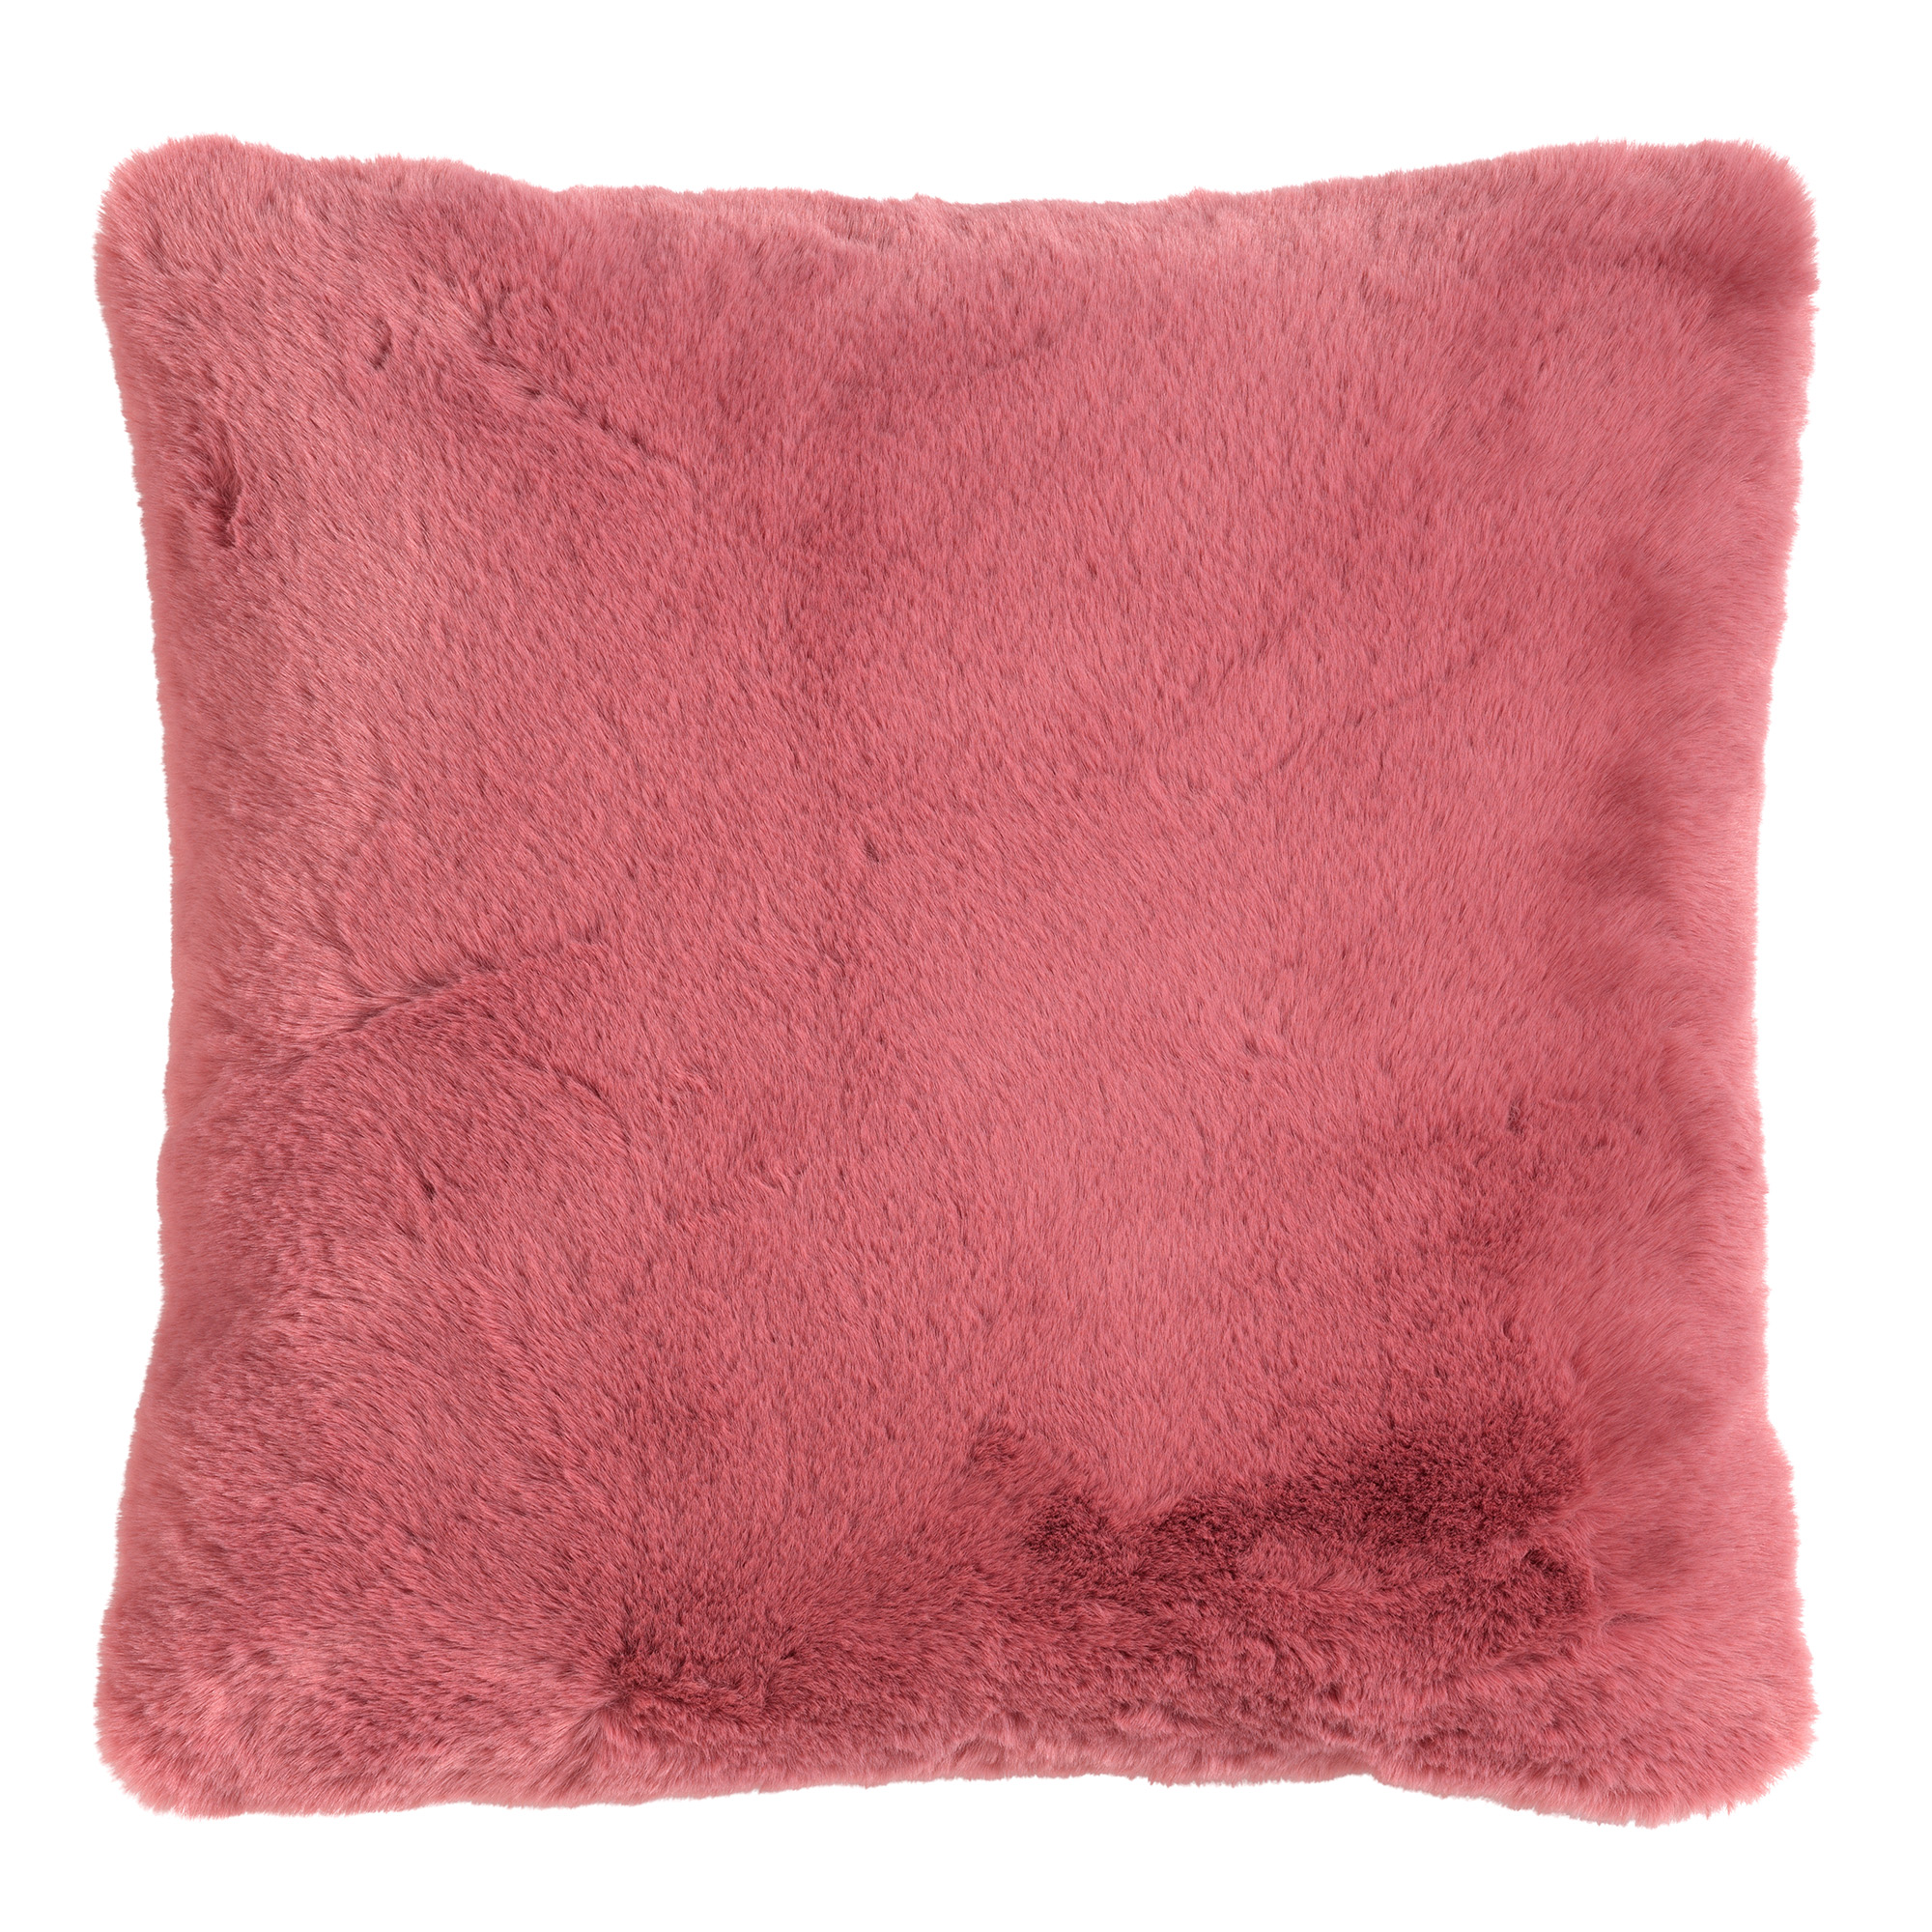 ZAYA - Kussenhoes 45x45 cm - bontlook - effen kleur - Dusty Rose - roze